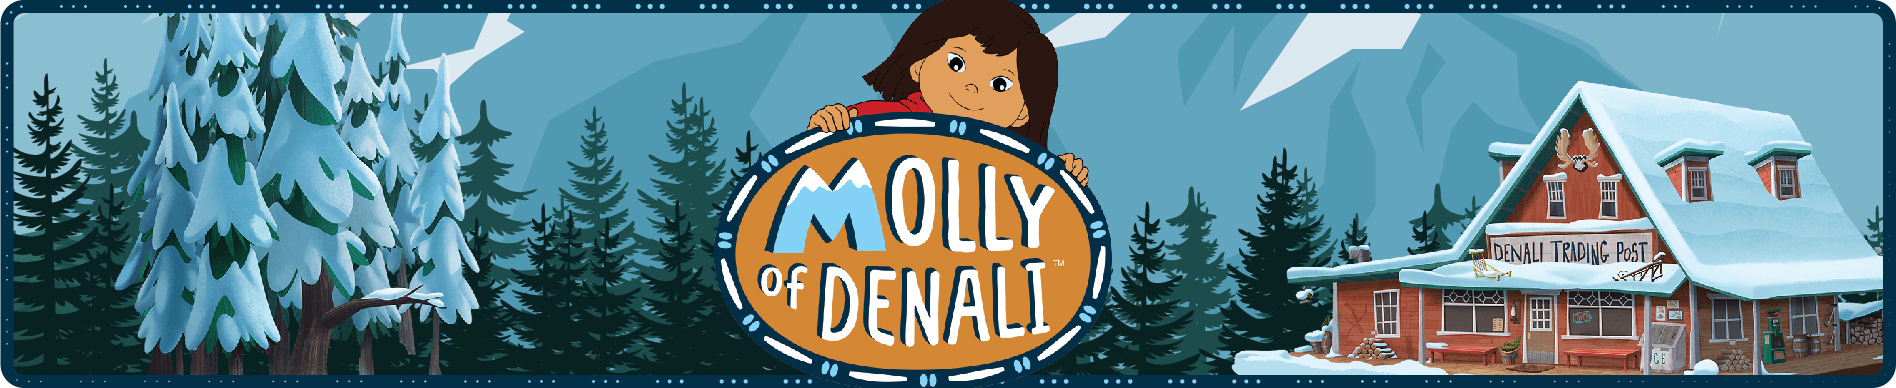 molly of denali header